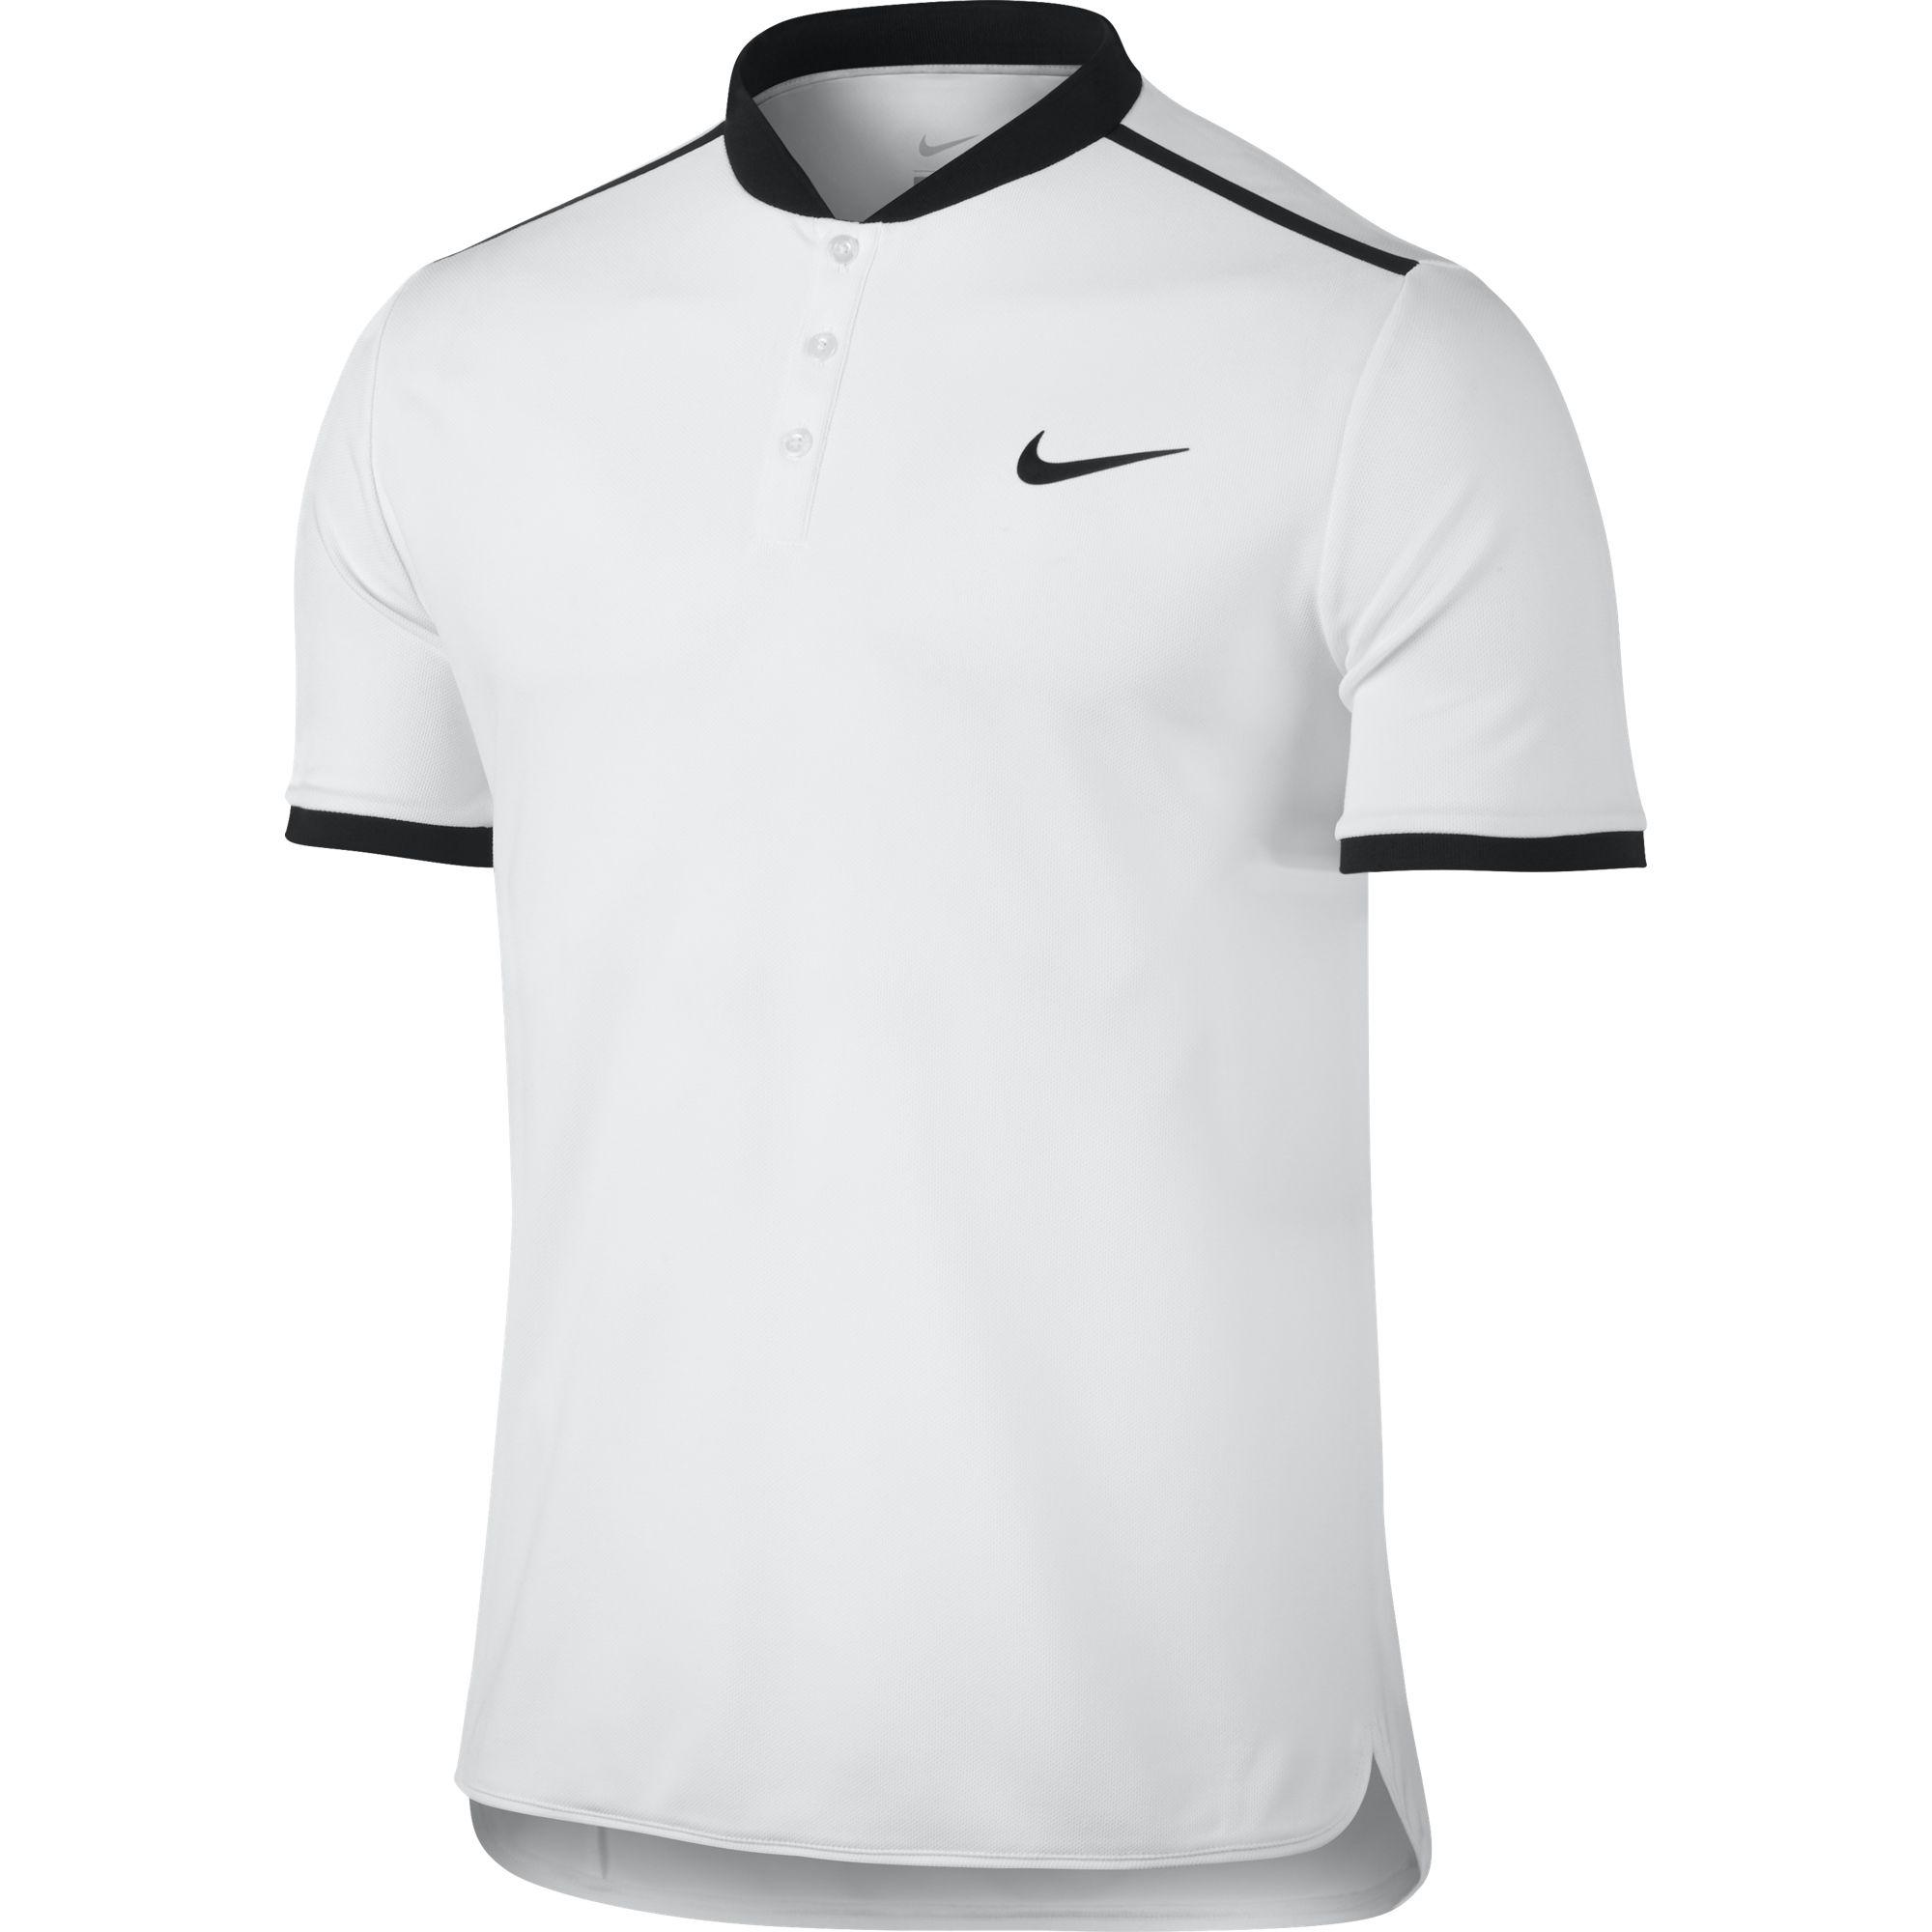 Nike Mens Court Advantage Polo - White/Black - Tennisnuts.com